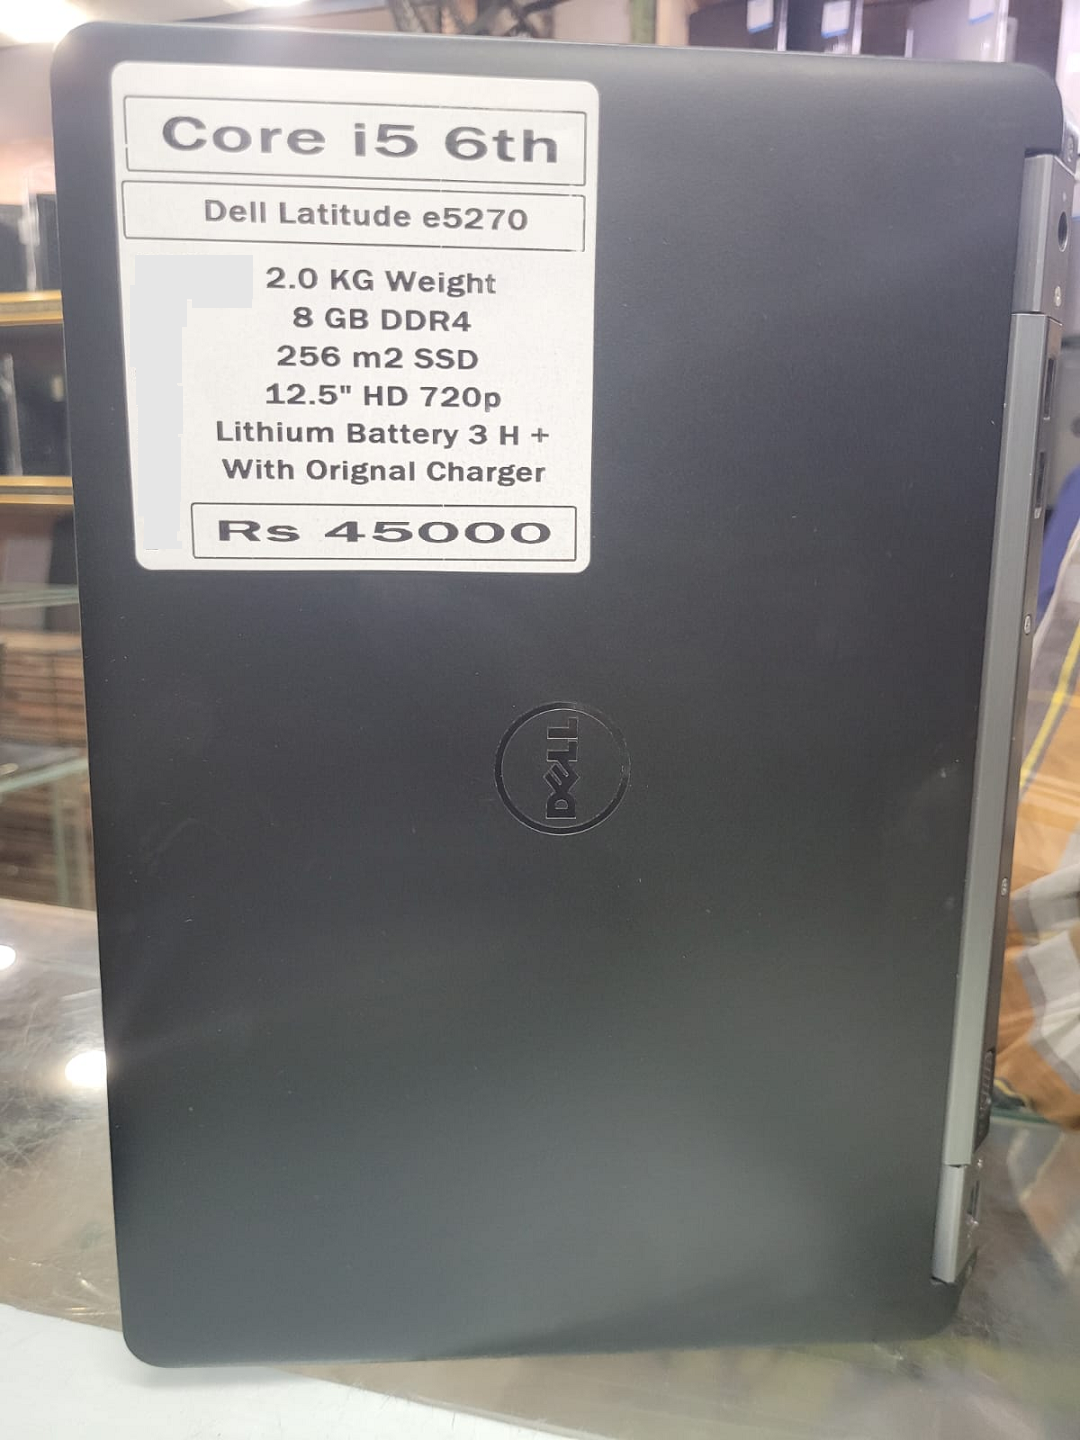 Dell latitude E5270 6th generation price in pakistan